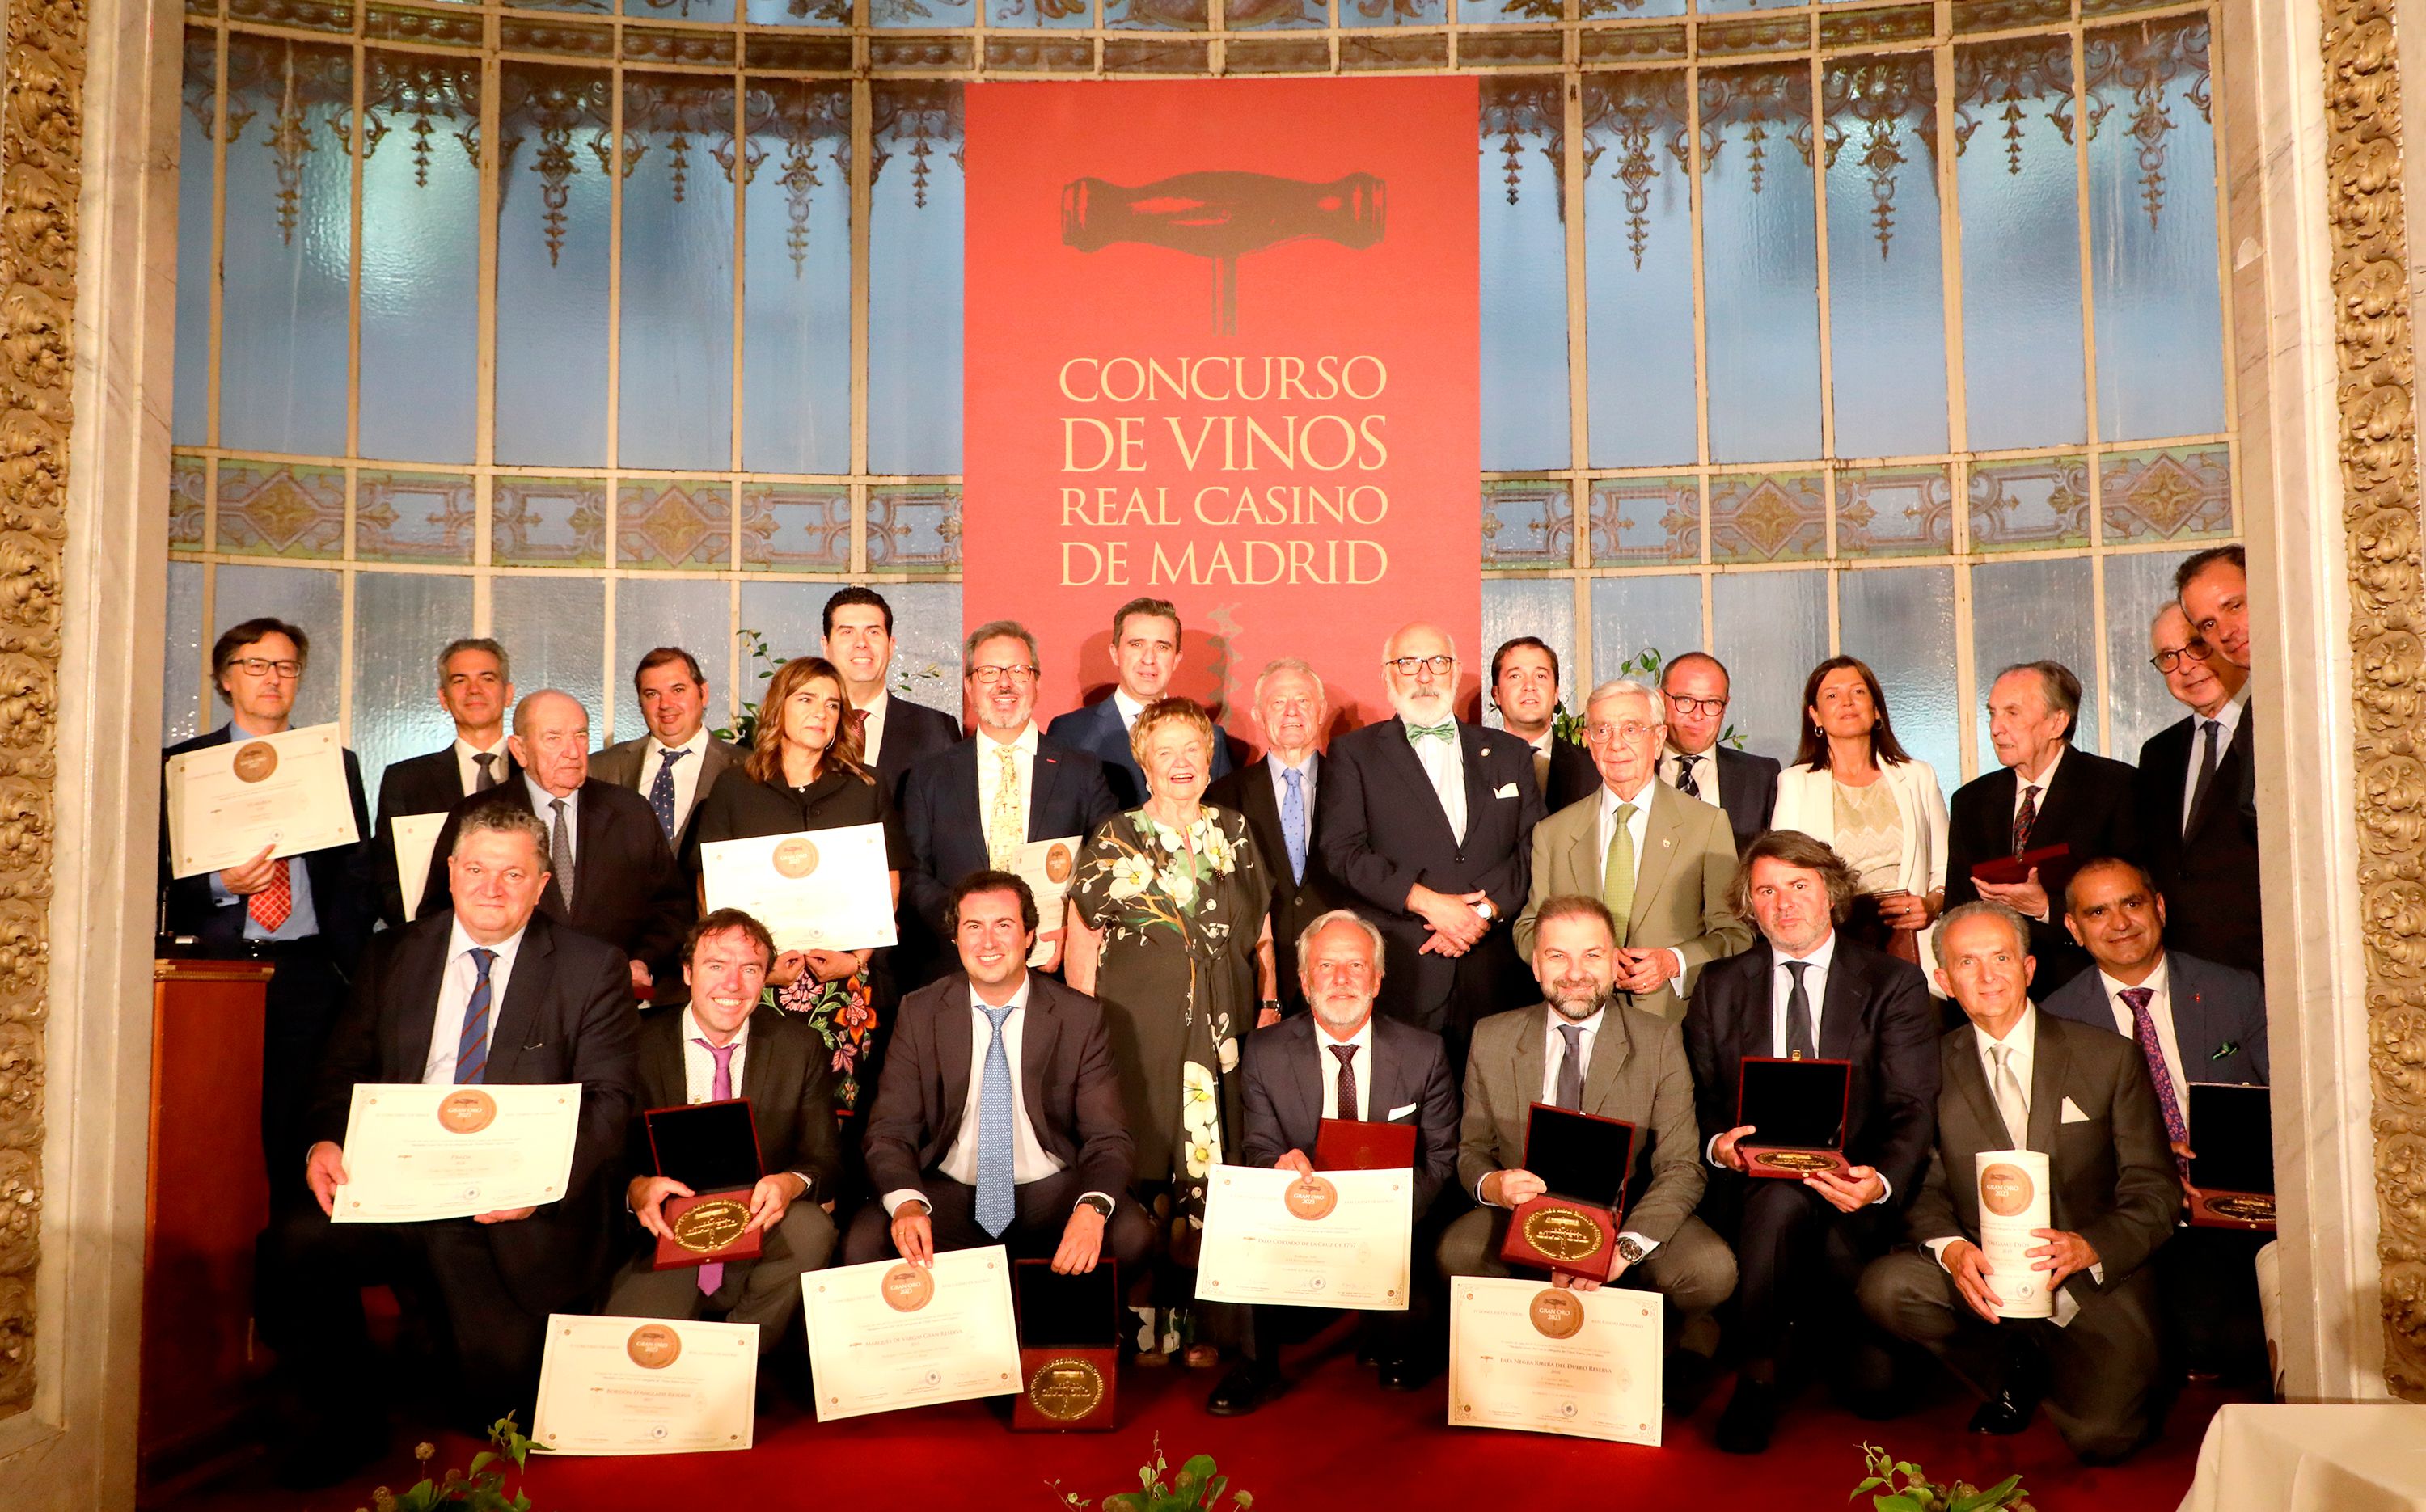 El Real Casino de Madrid entrega los premios de su Concurso de Vinos en una cena de gala